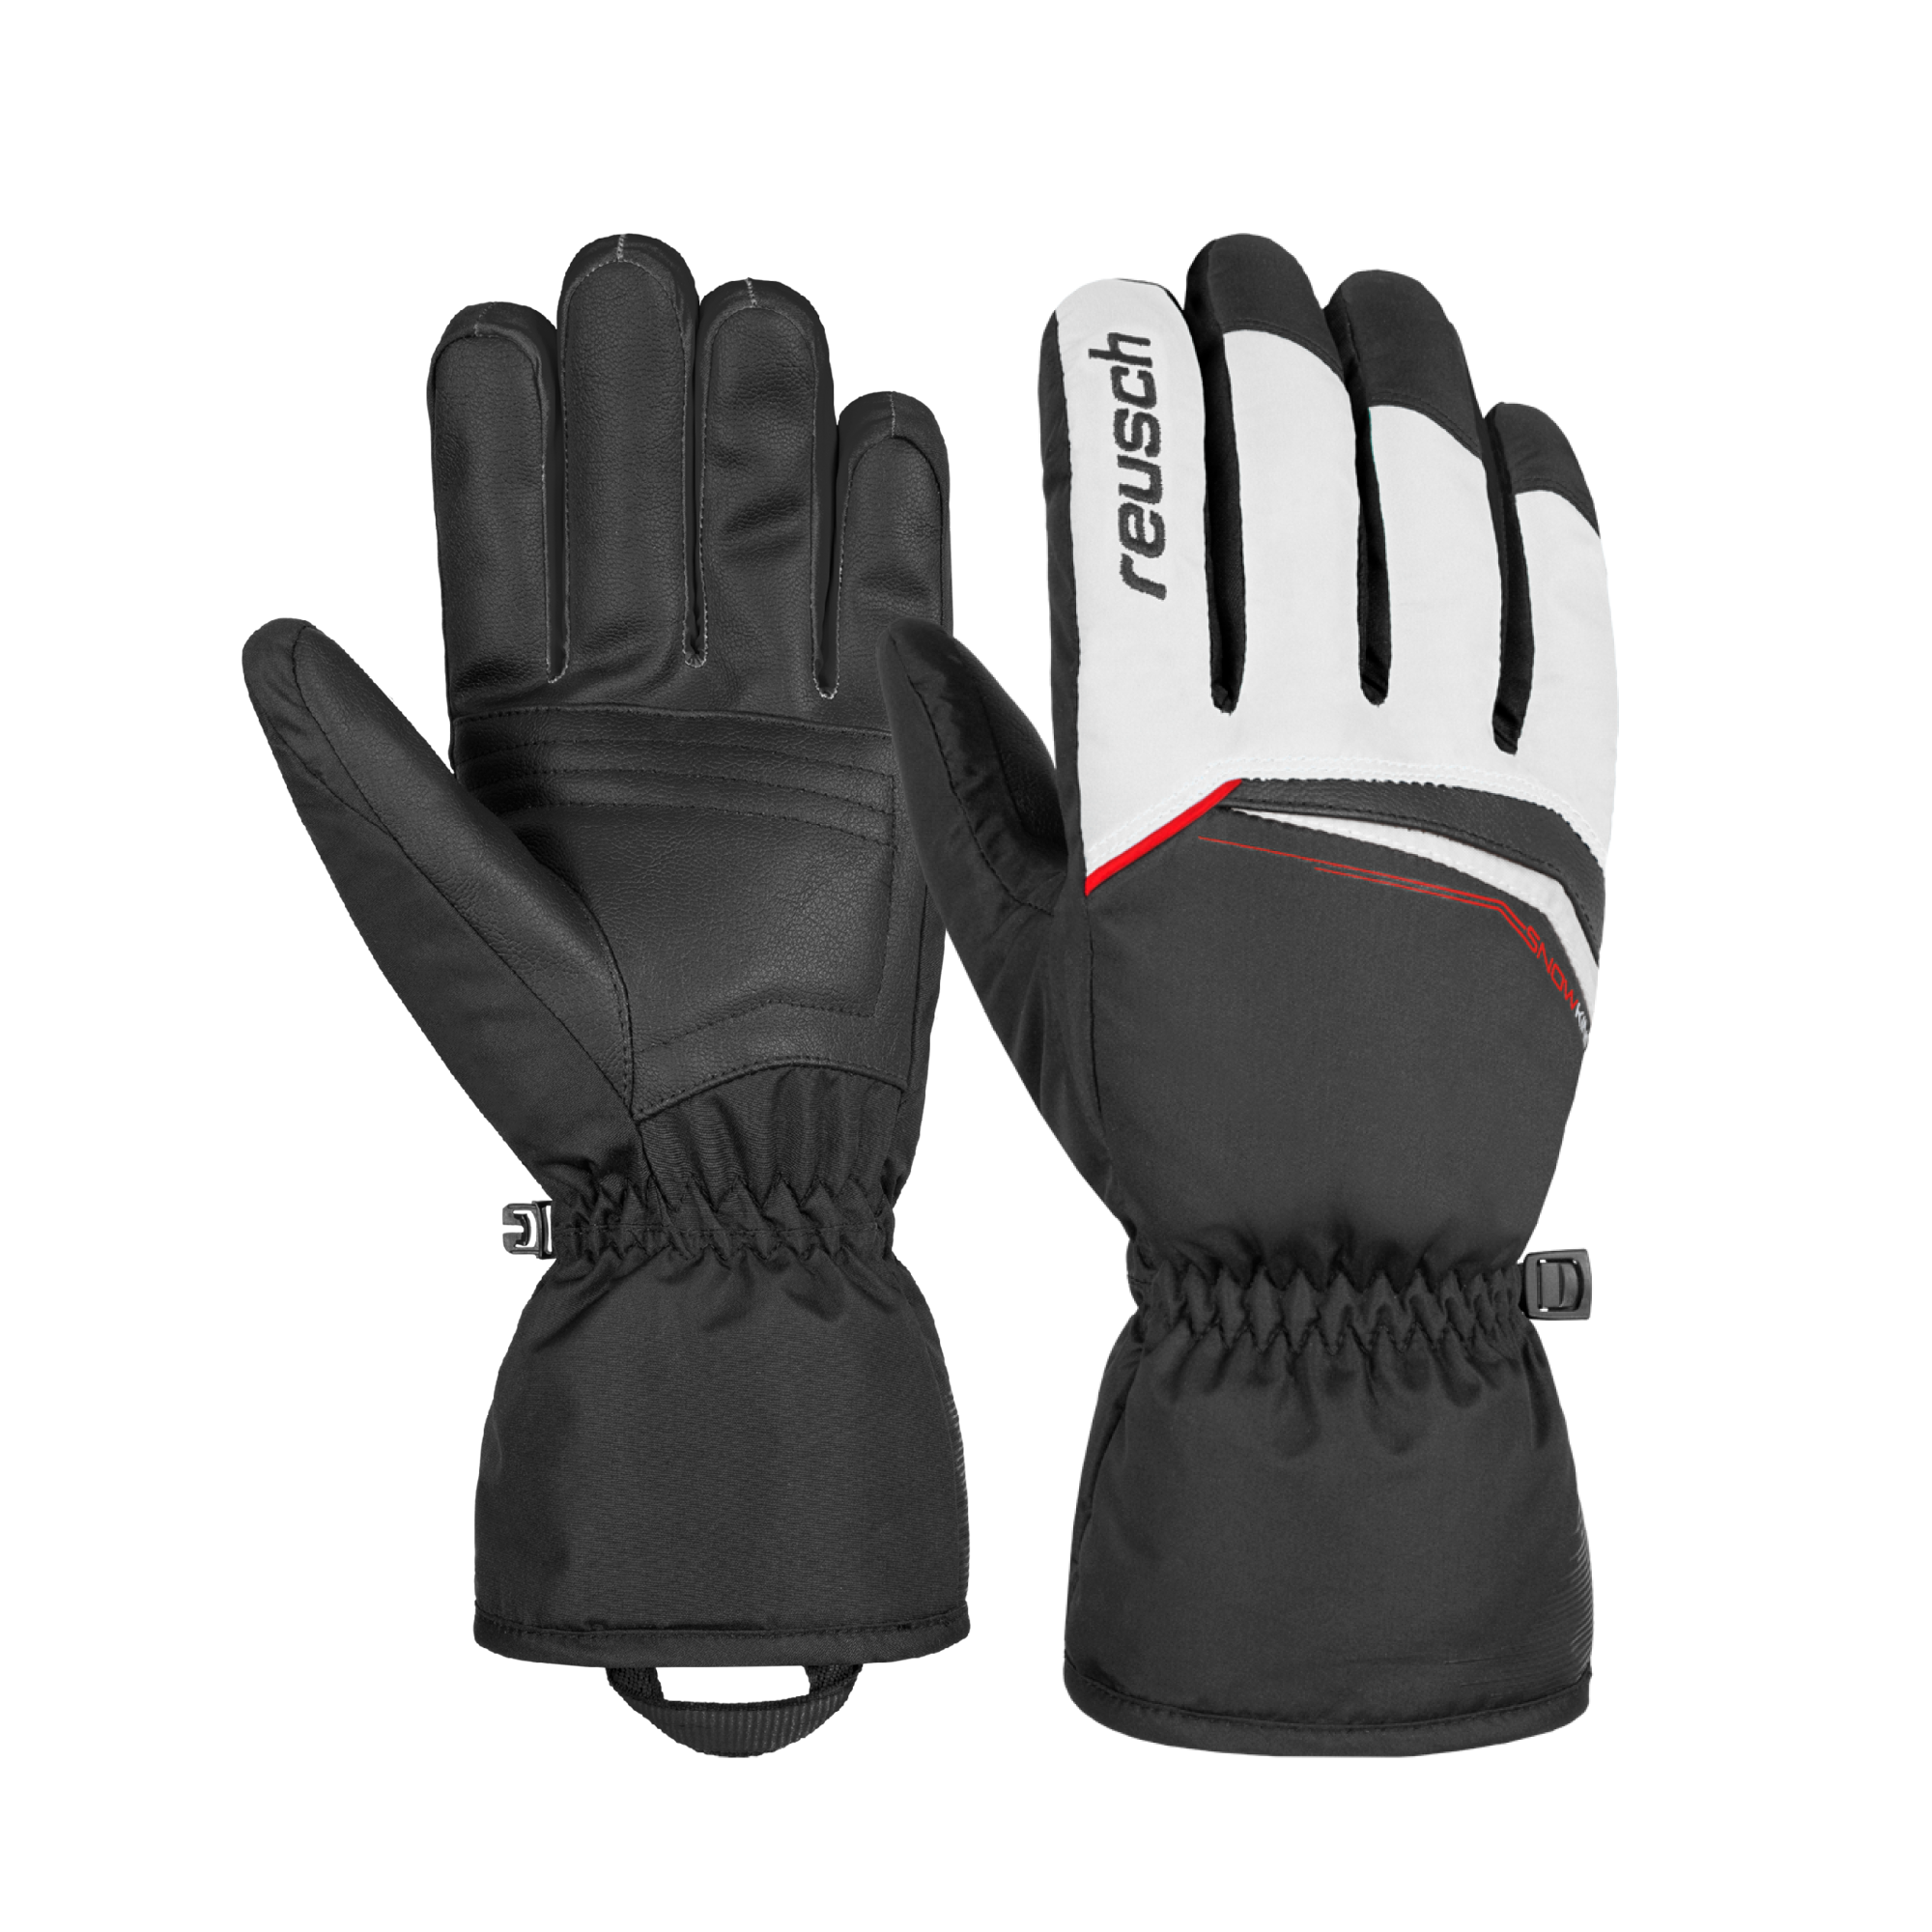 New Reusch Ski Gloves Snow King Adult XS S M L #4701198INV Black 